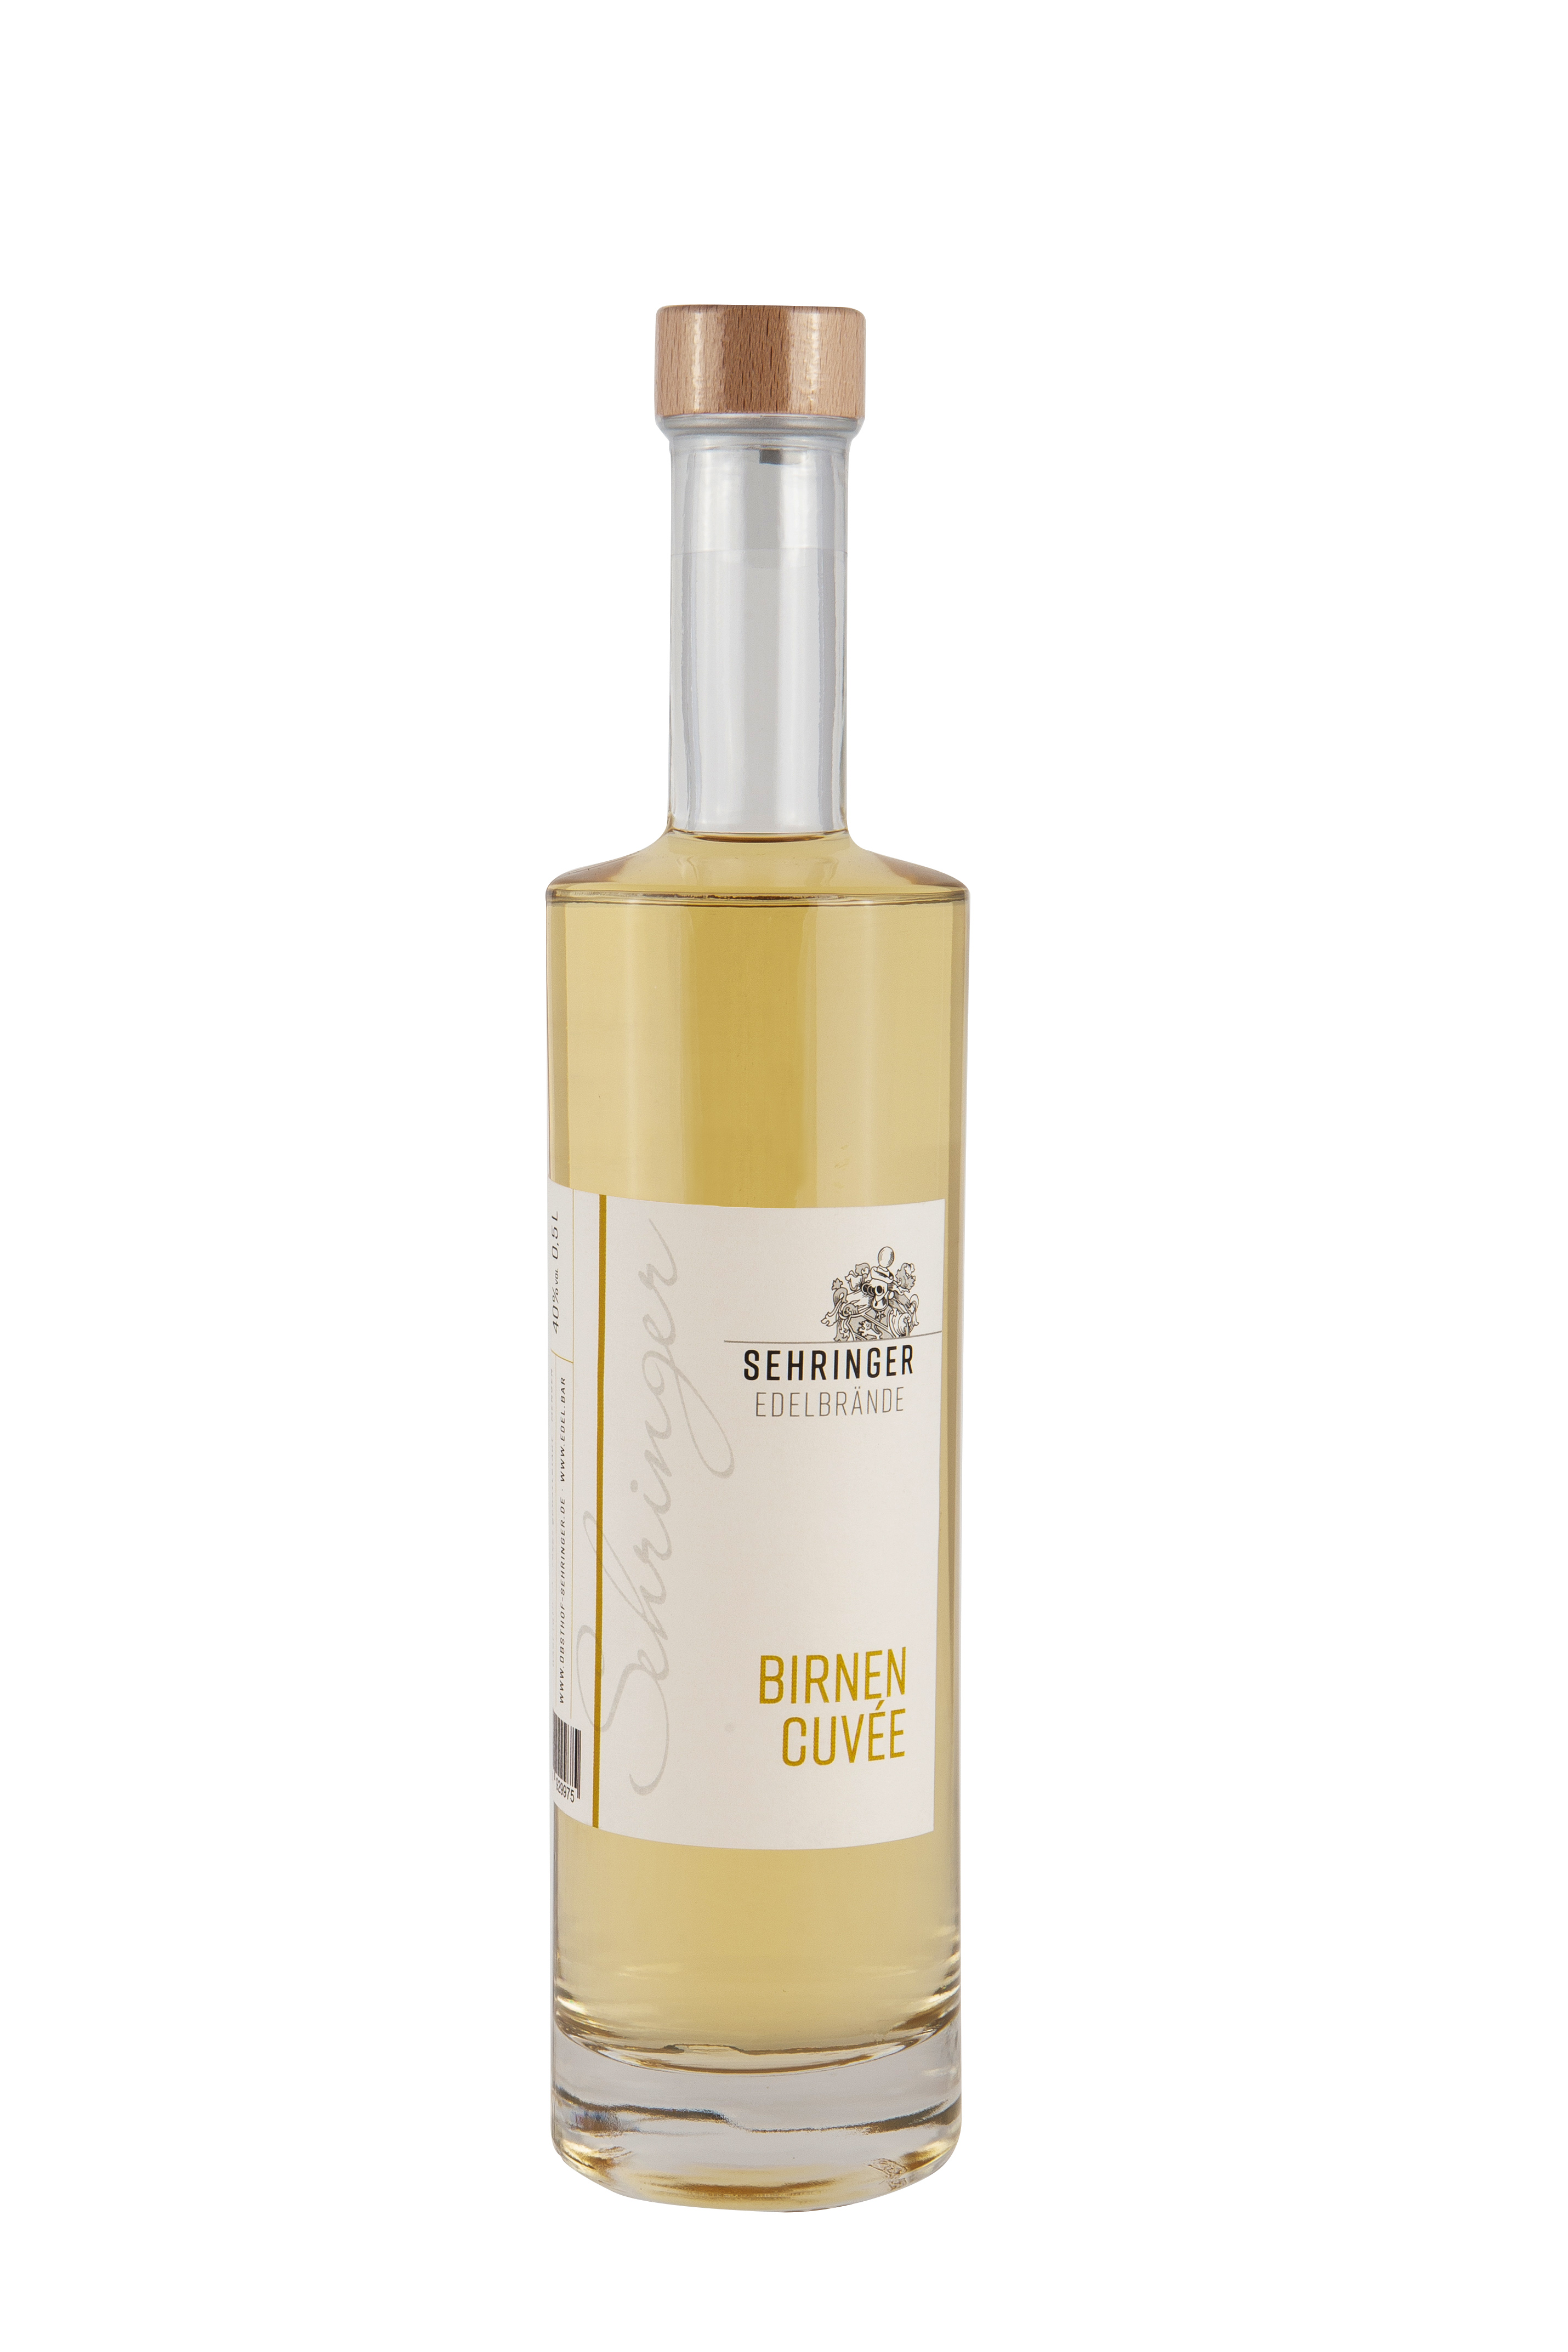 Sehringer Birnen Cuvée, 40% vol.